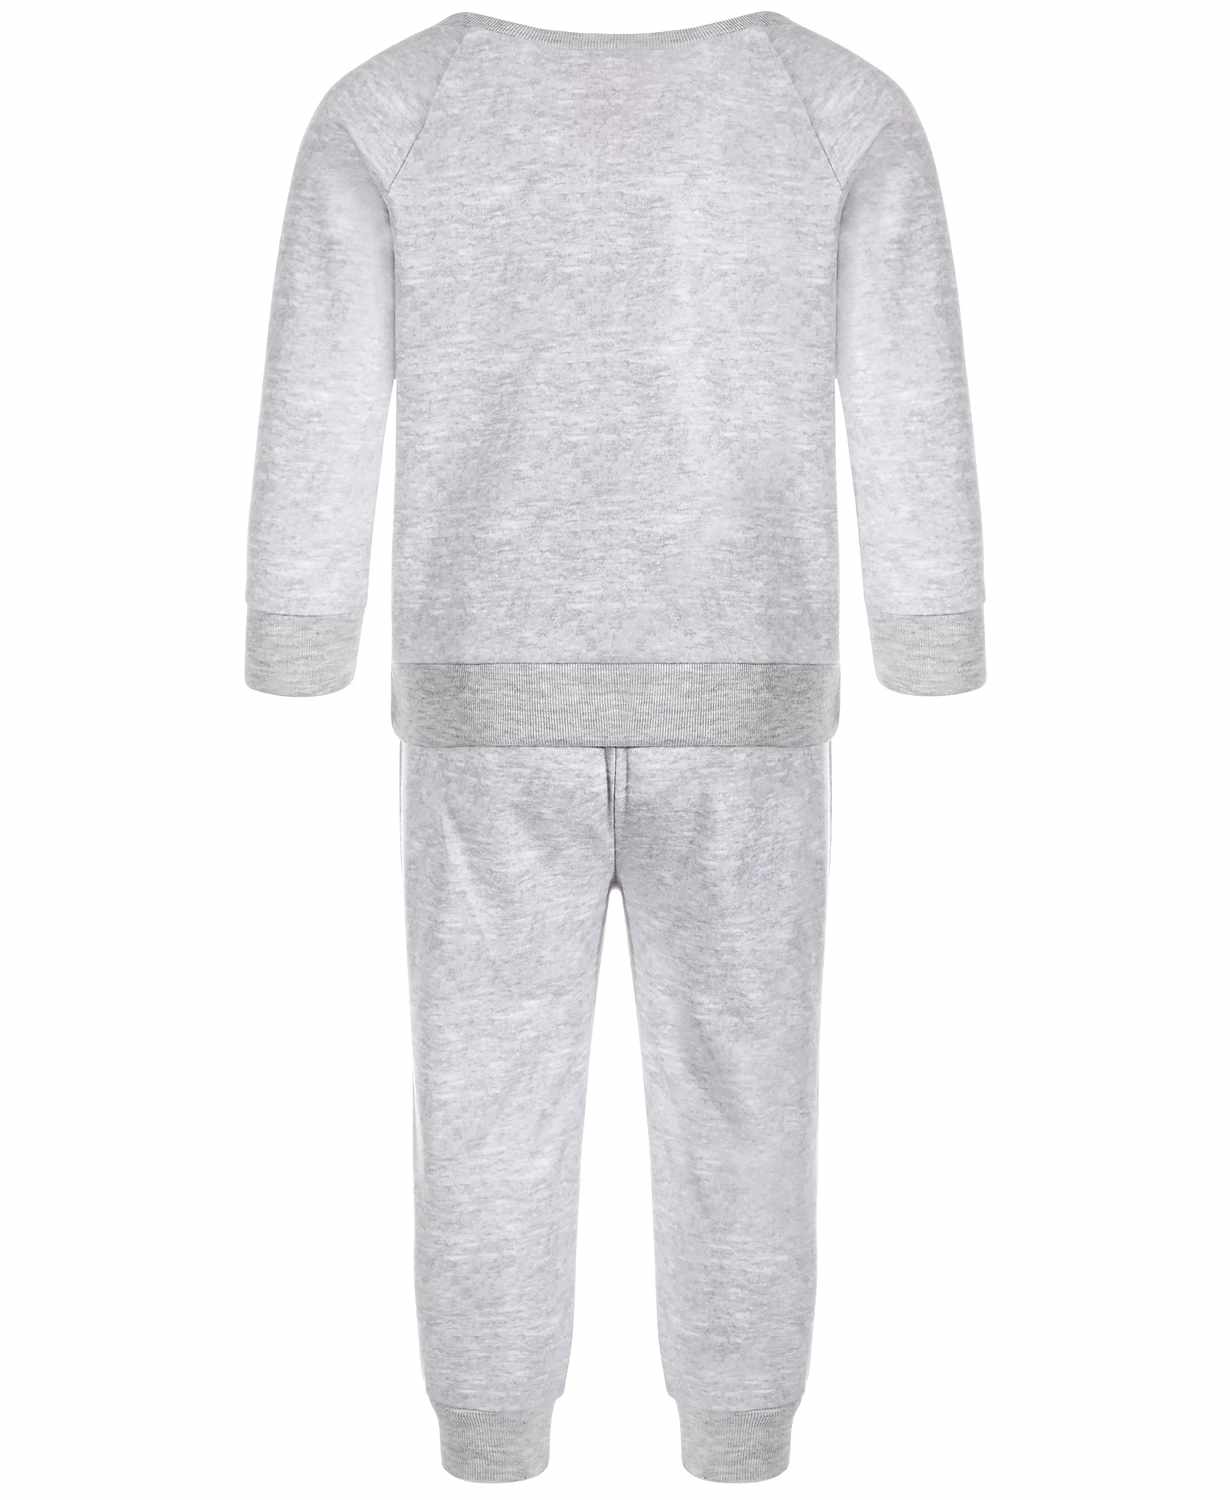 Family Pajamas Infant Matching Crew Love Pajama Set